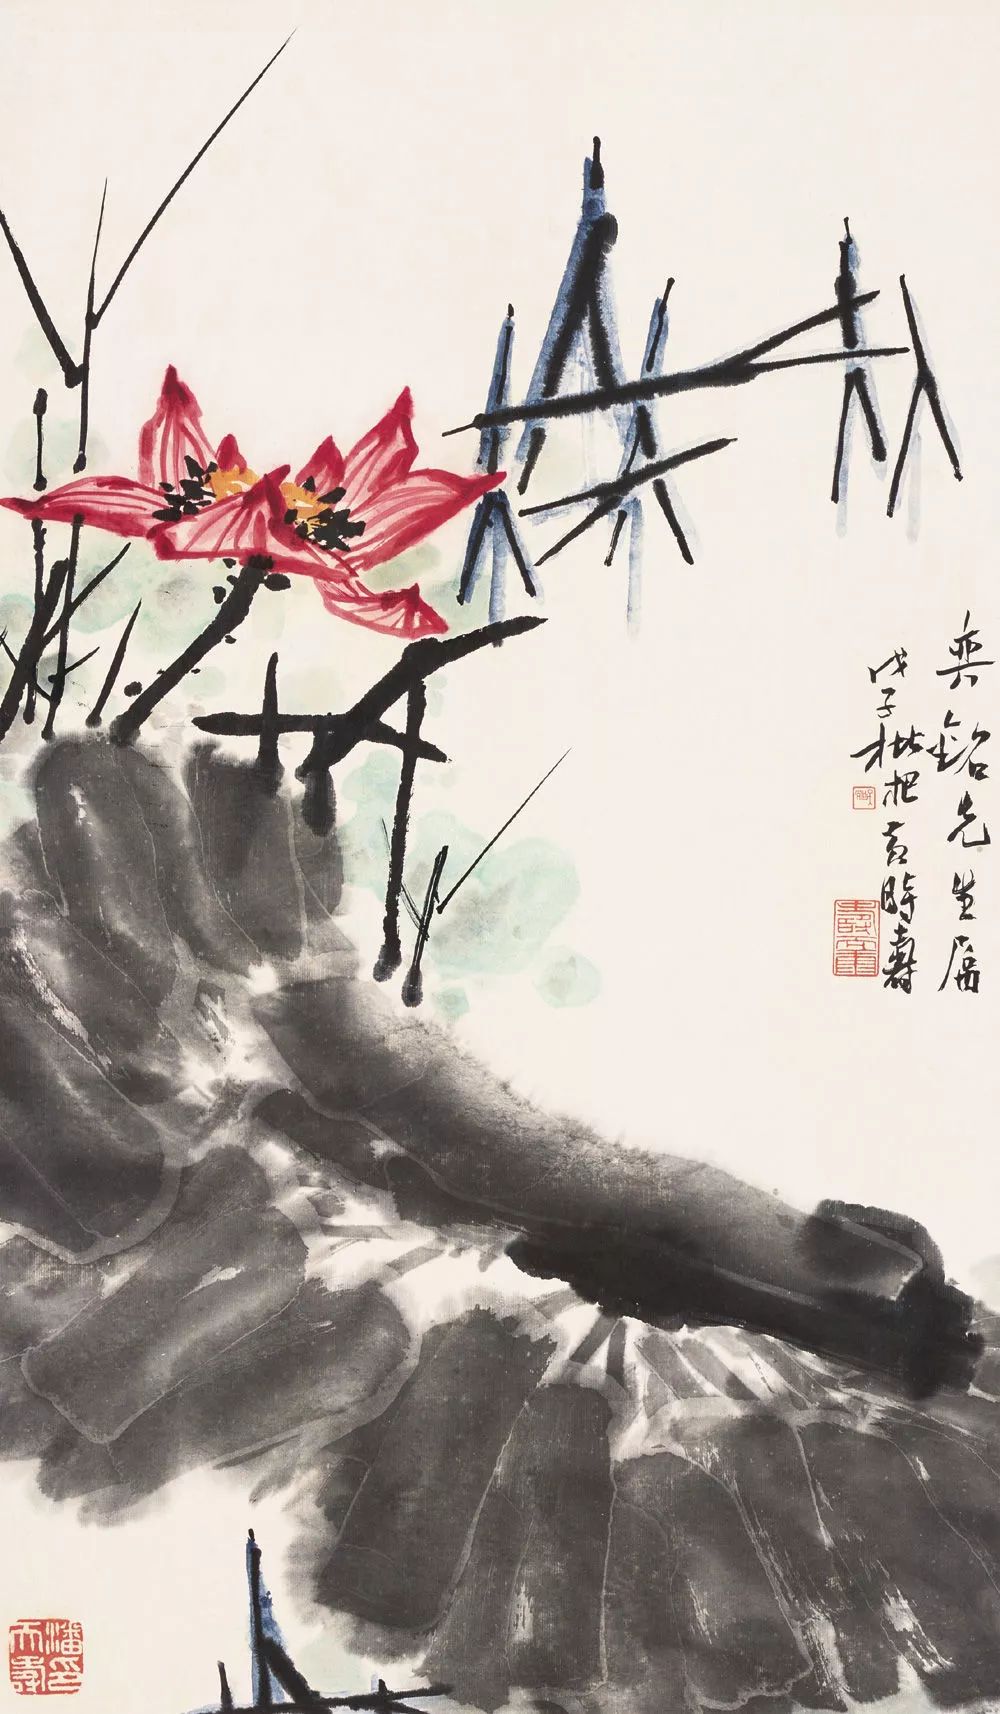 【书画收藏】潘天寿:花鸟画的布置,应以势为主